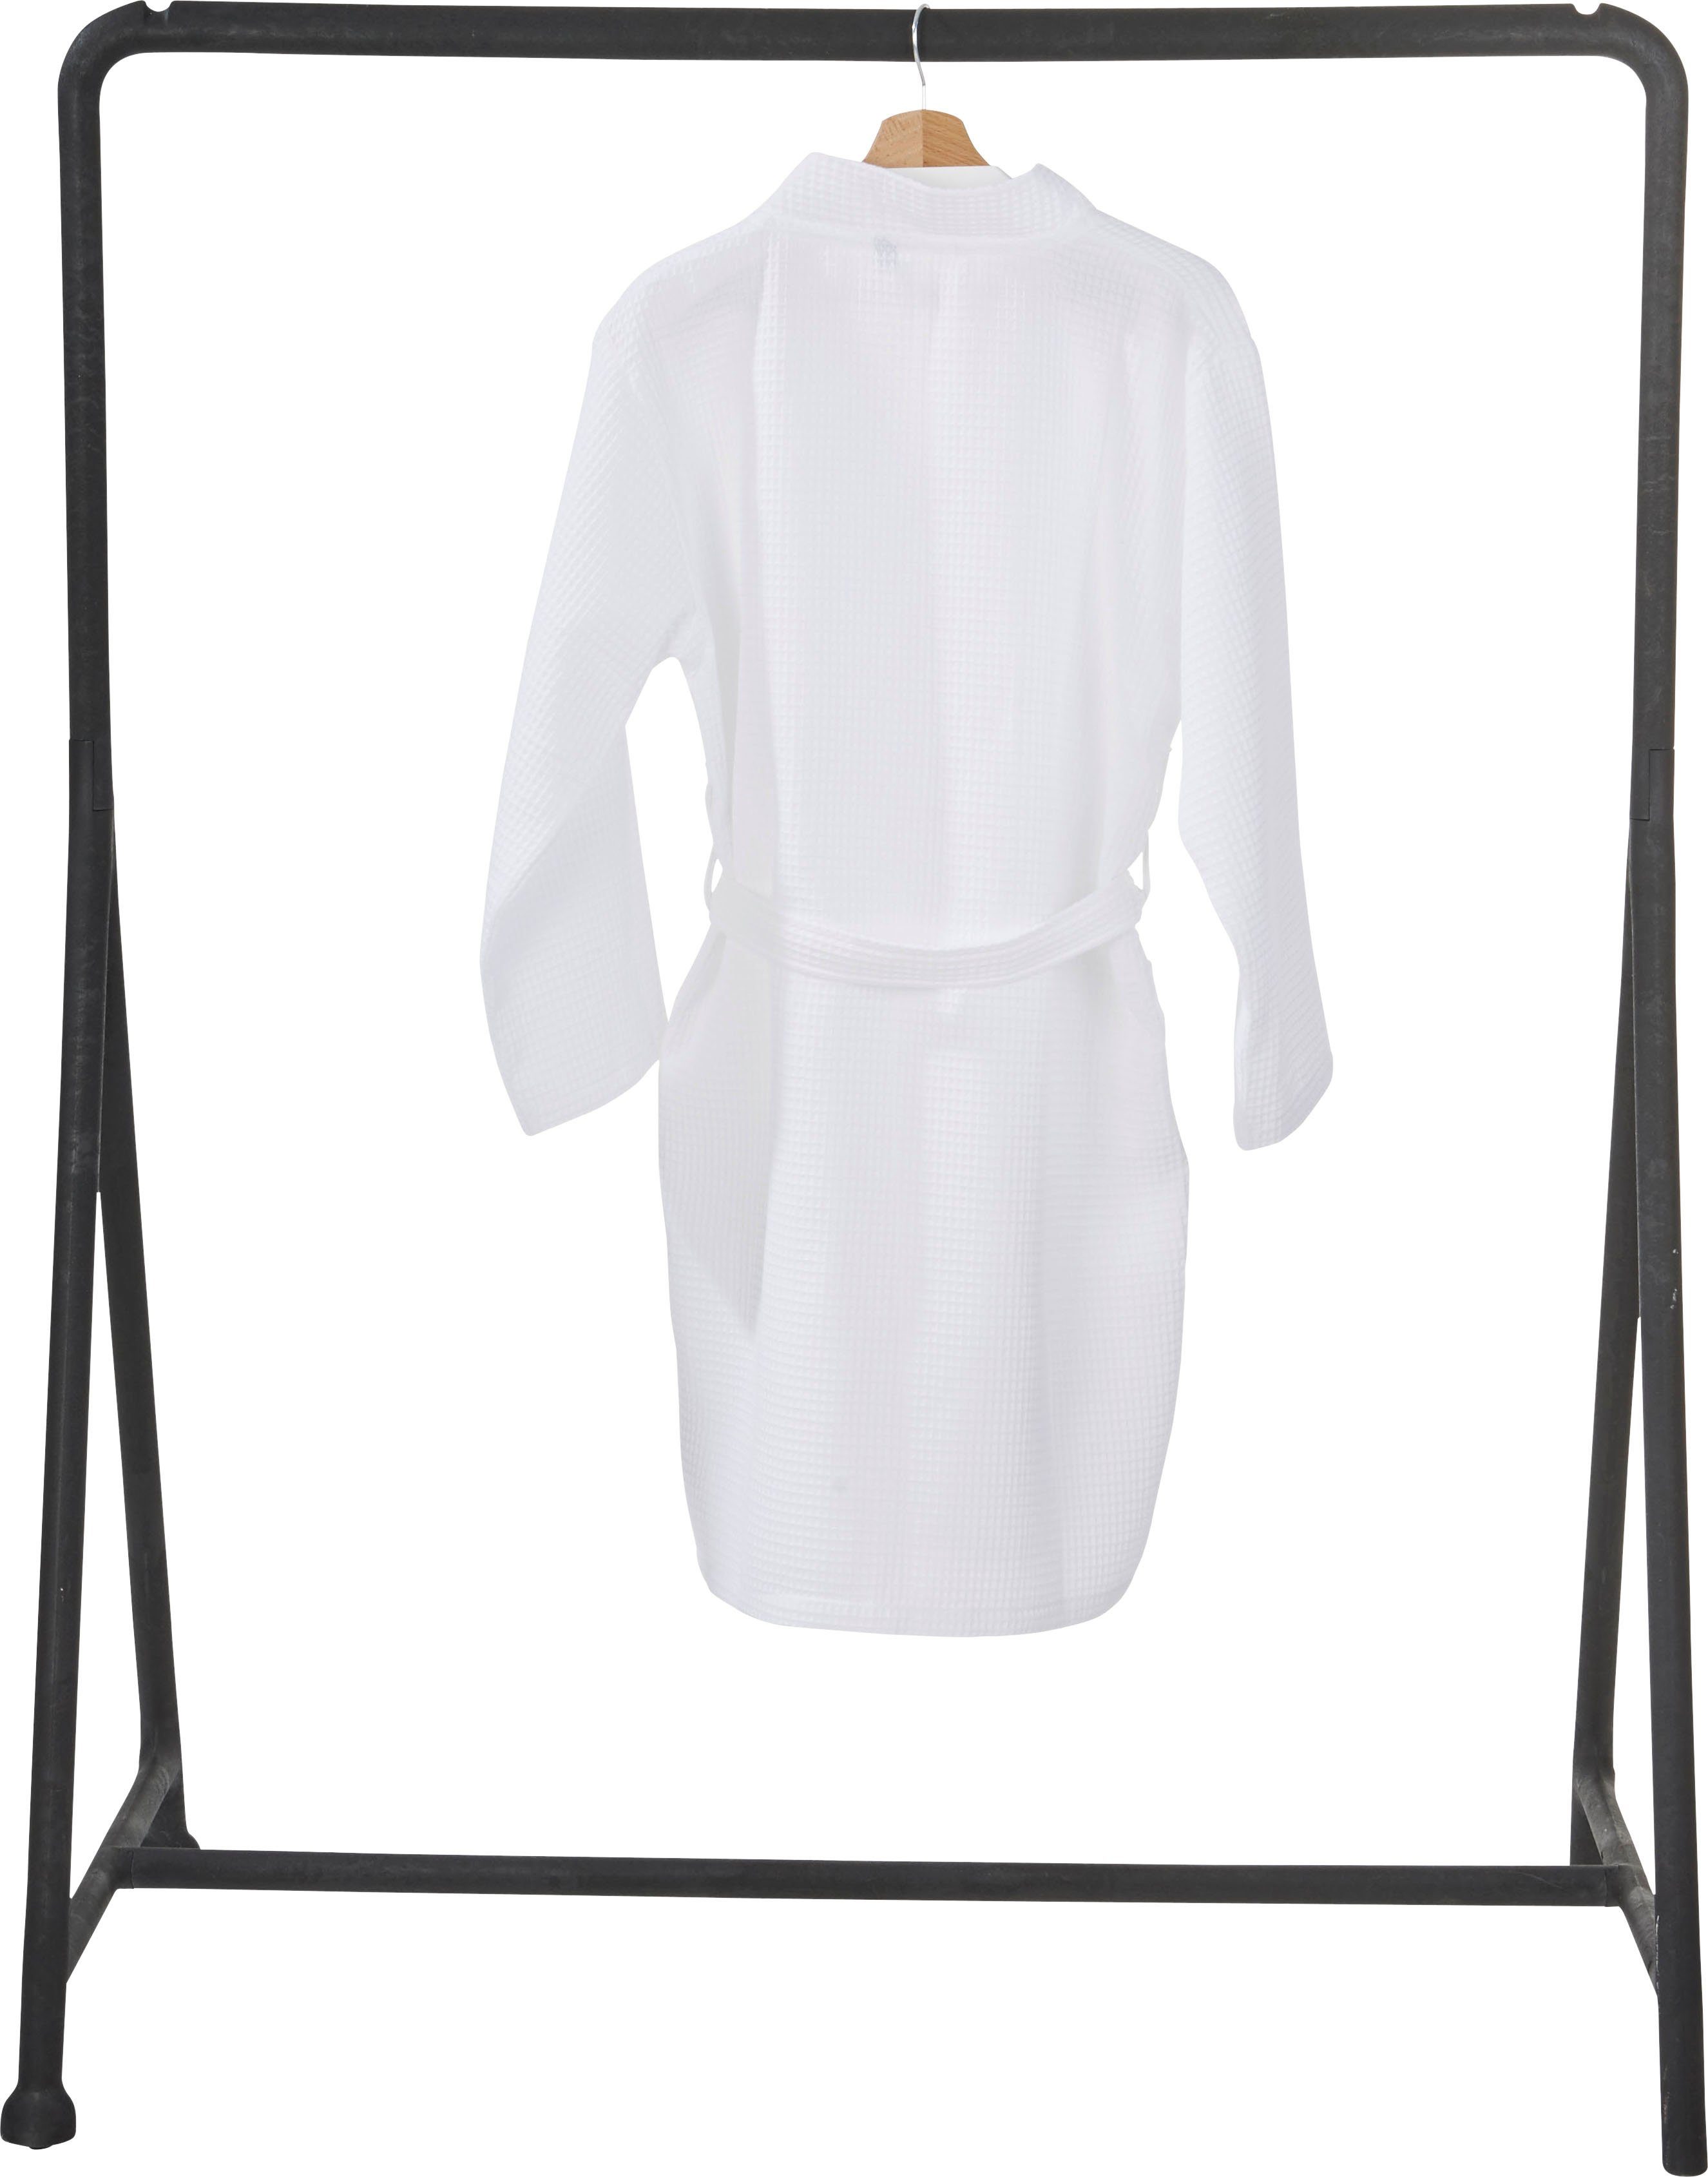 Schalkragen aufgesetzten Kurzform, weiß Piqué, MySense, und Taschen Waffelpiqué-Struktur, Damenbademantel mit done.®